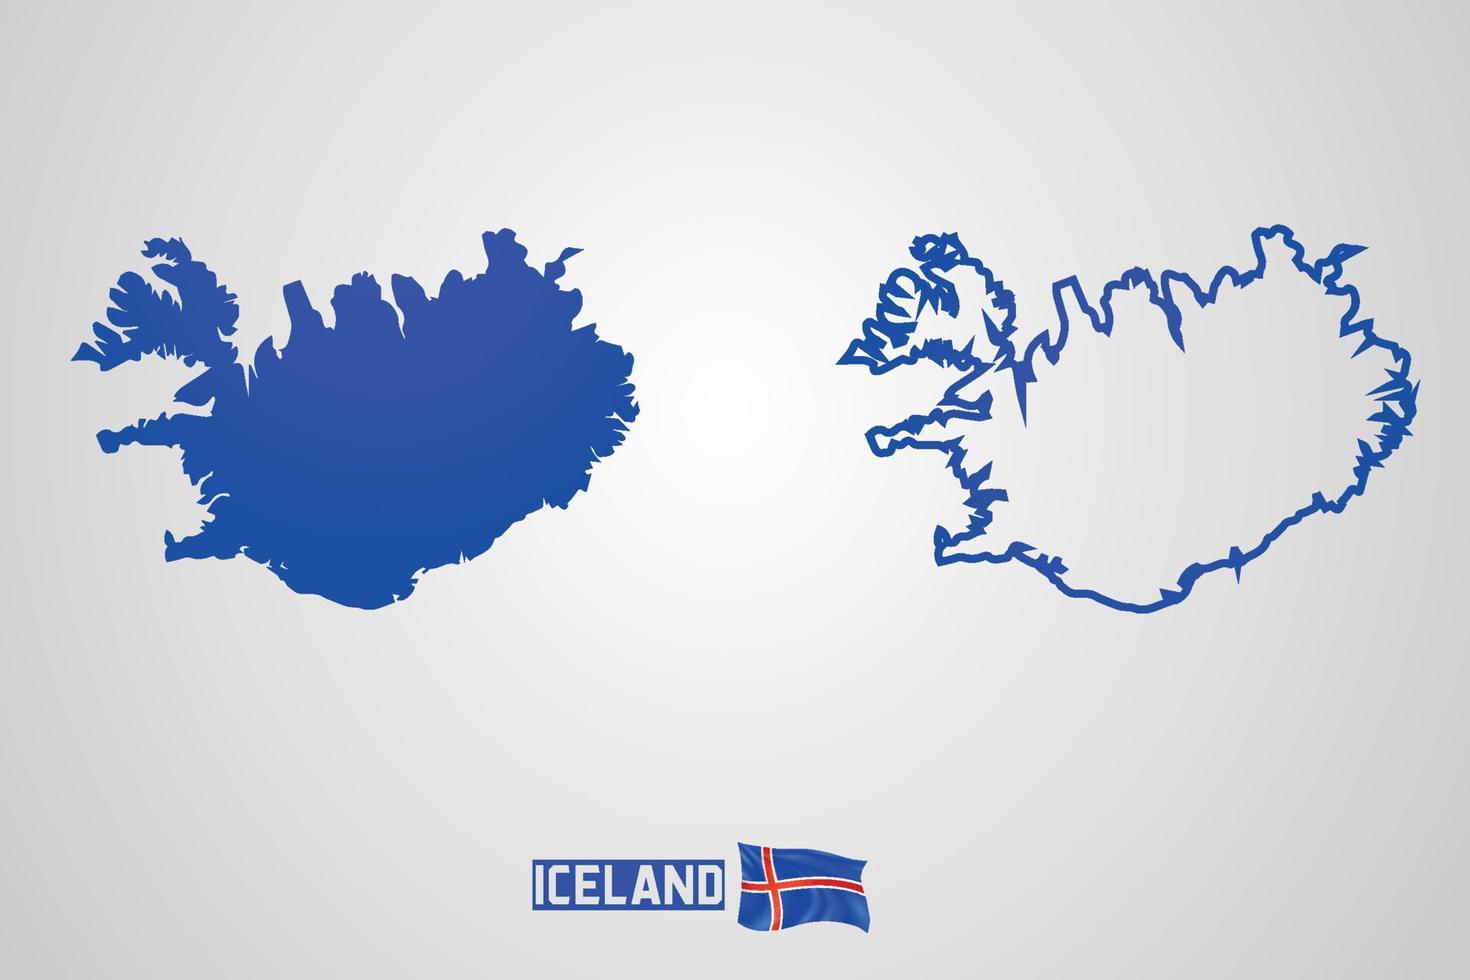 Islanda repubblica carta geografica con bandiera, vettore illustrazione.